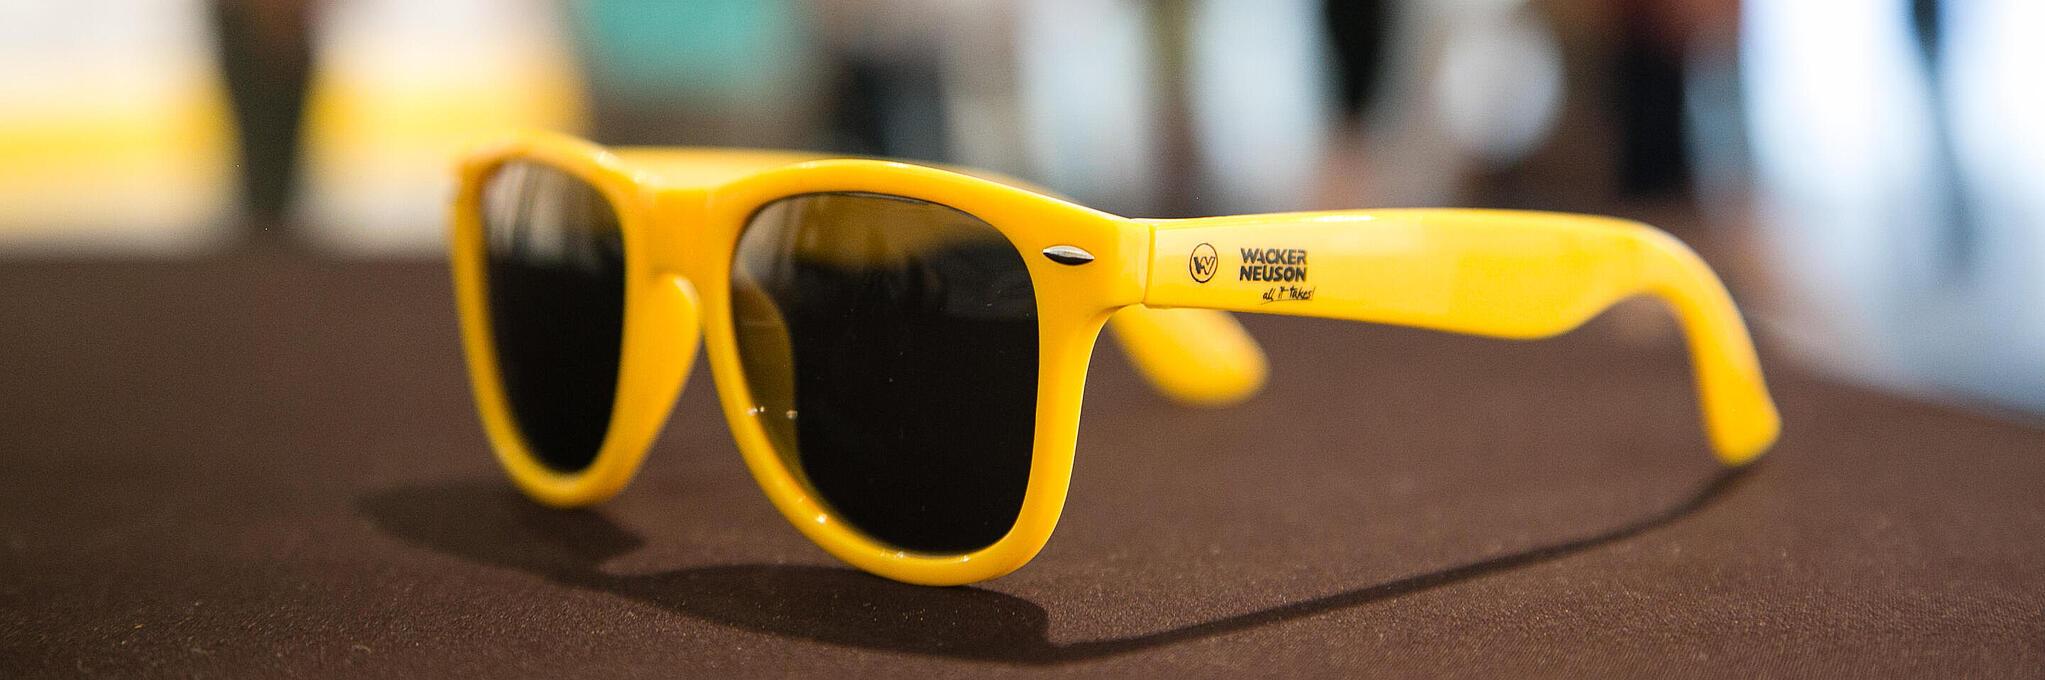 Gafas de sol amarillas con el logotipo de Wacker Neuson.